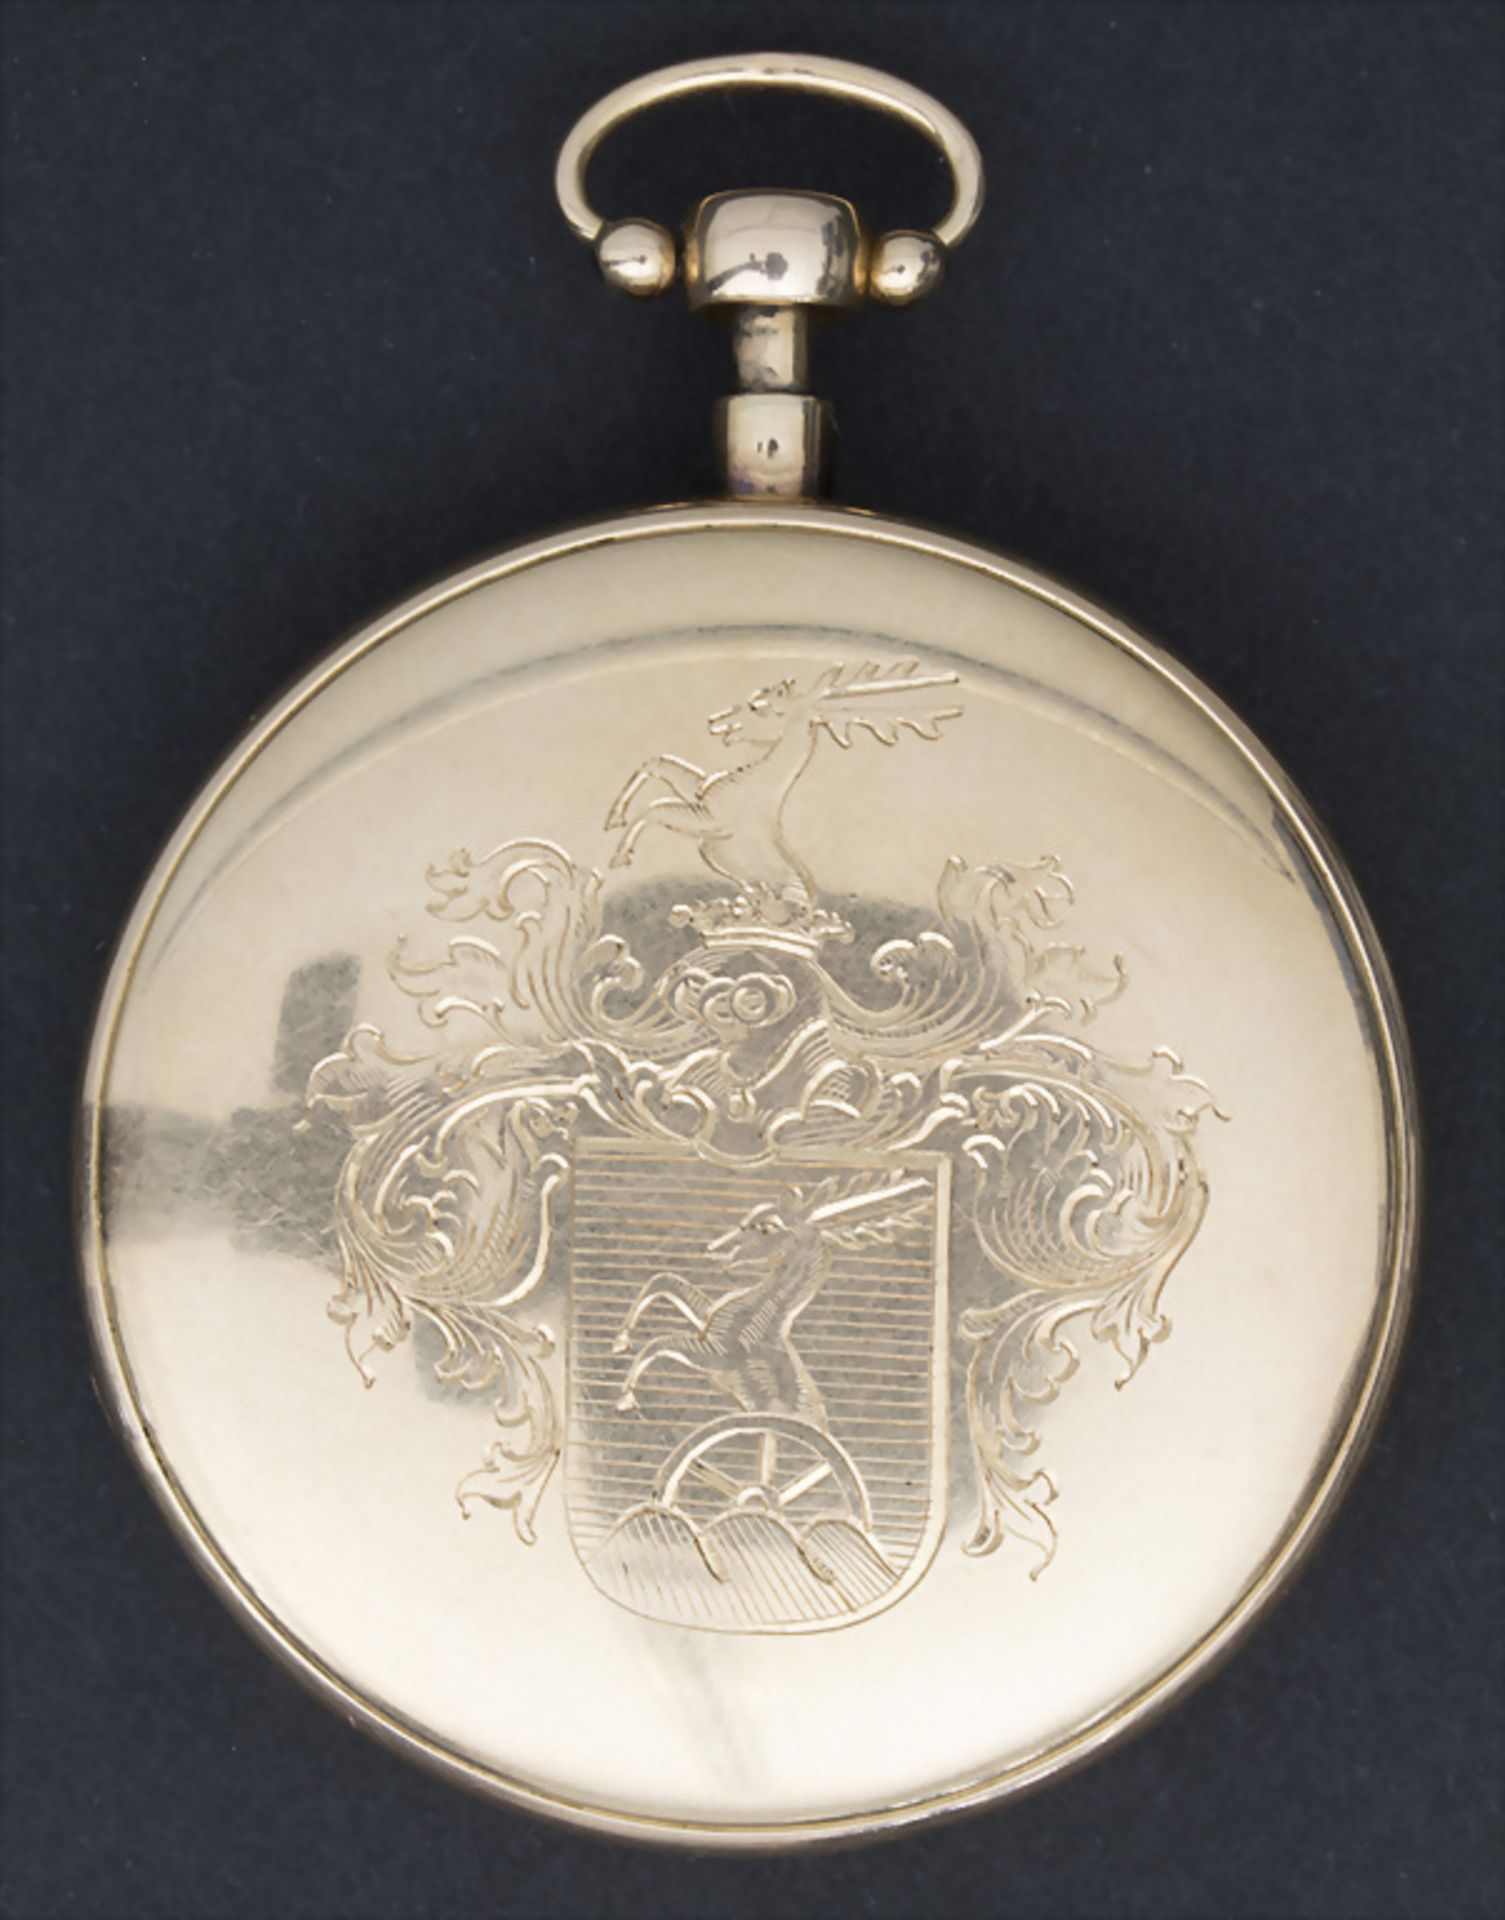 Offene Herrentaschenuhr ¼ Std.-Repetition / A pocket watch, Schweiz/Swiss, um 1820 - Image 2 of 6